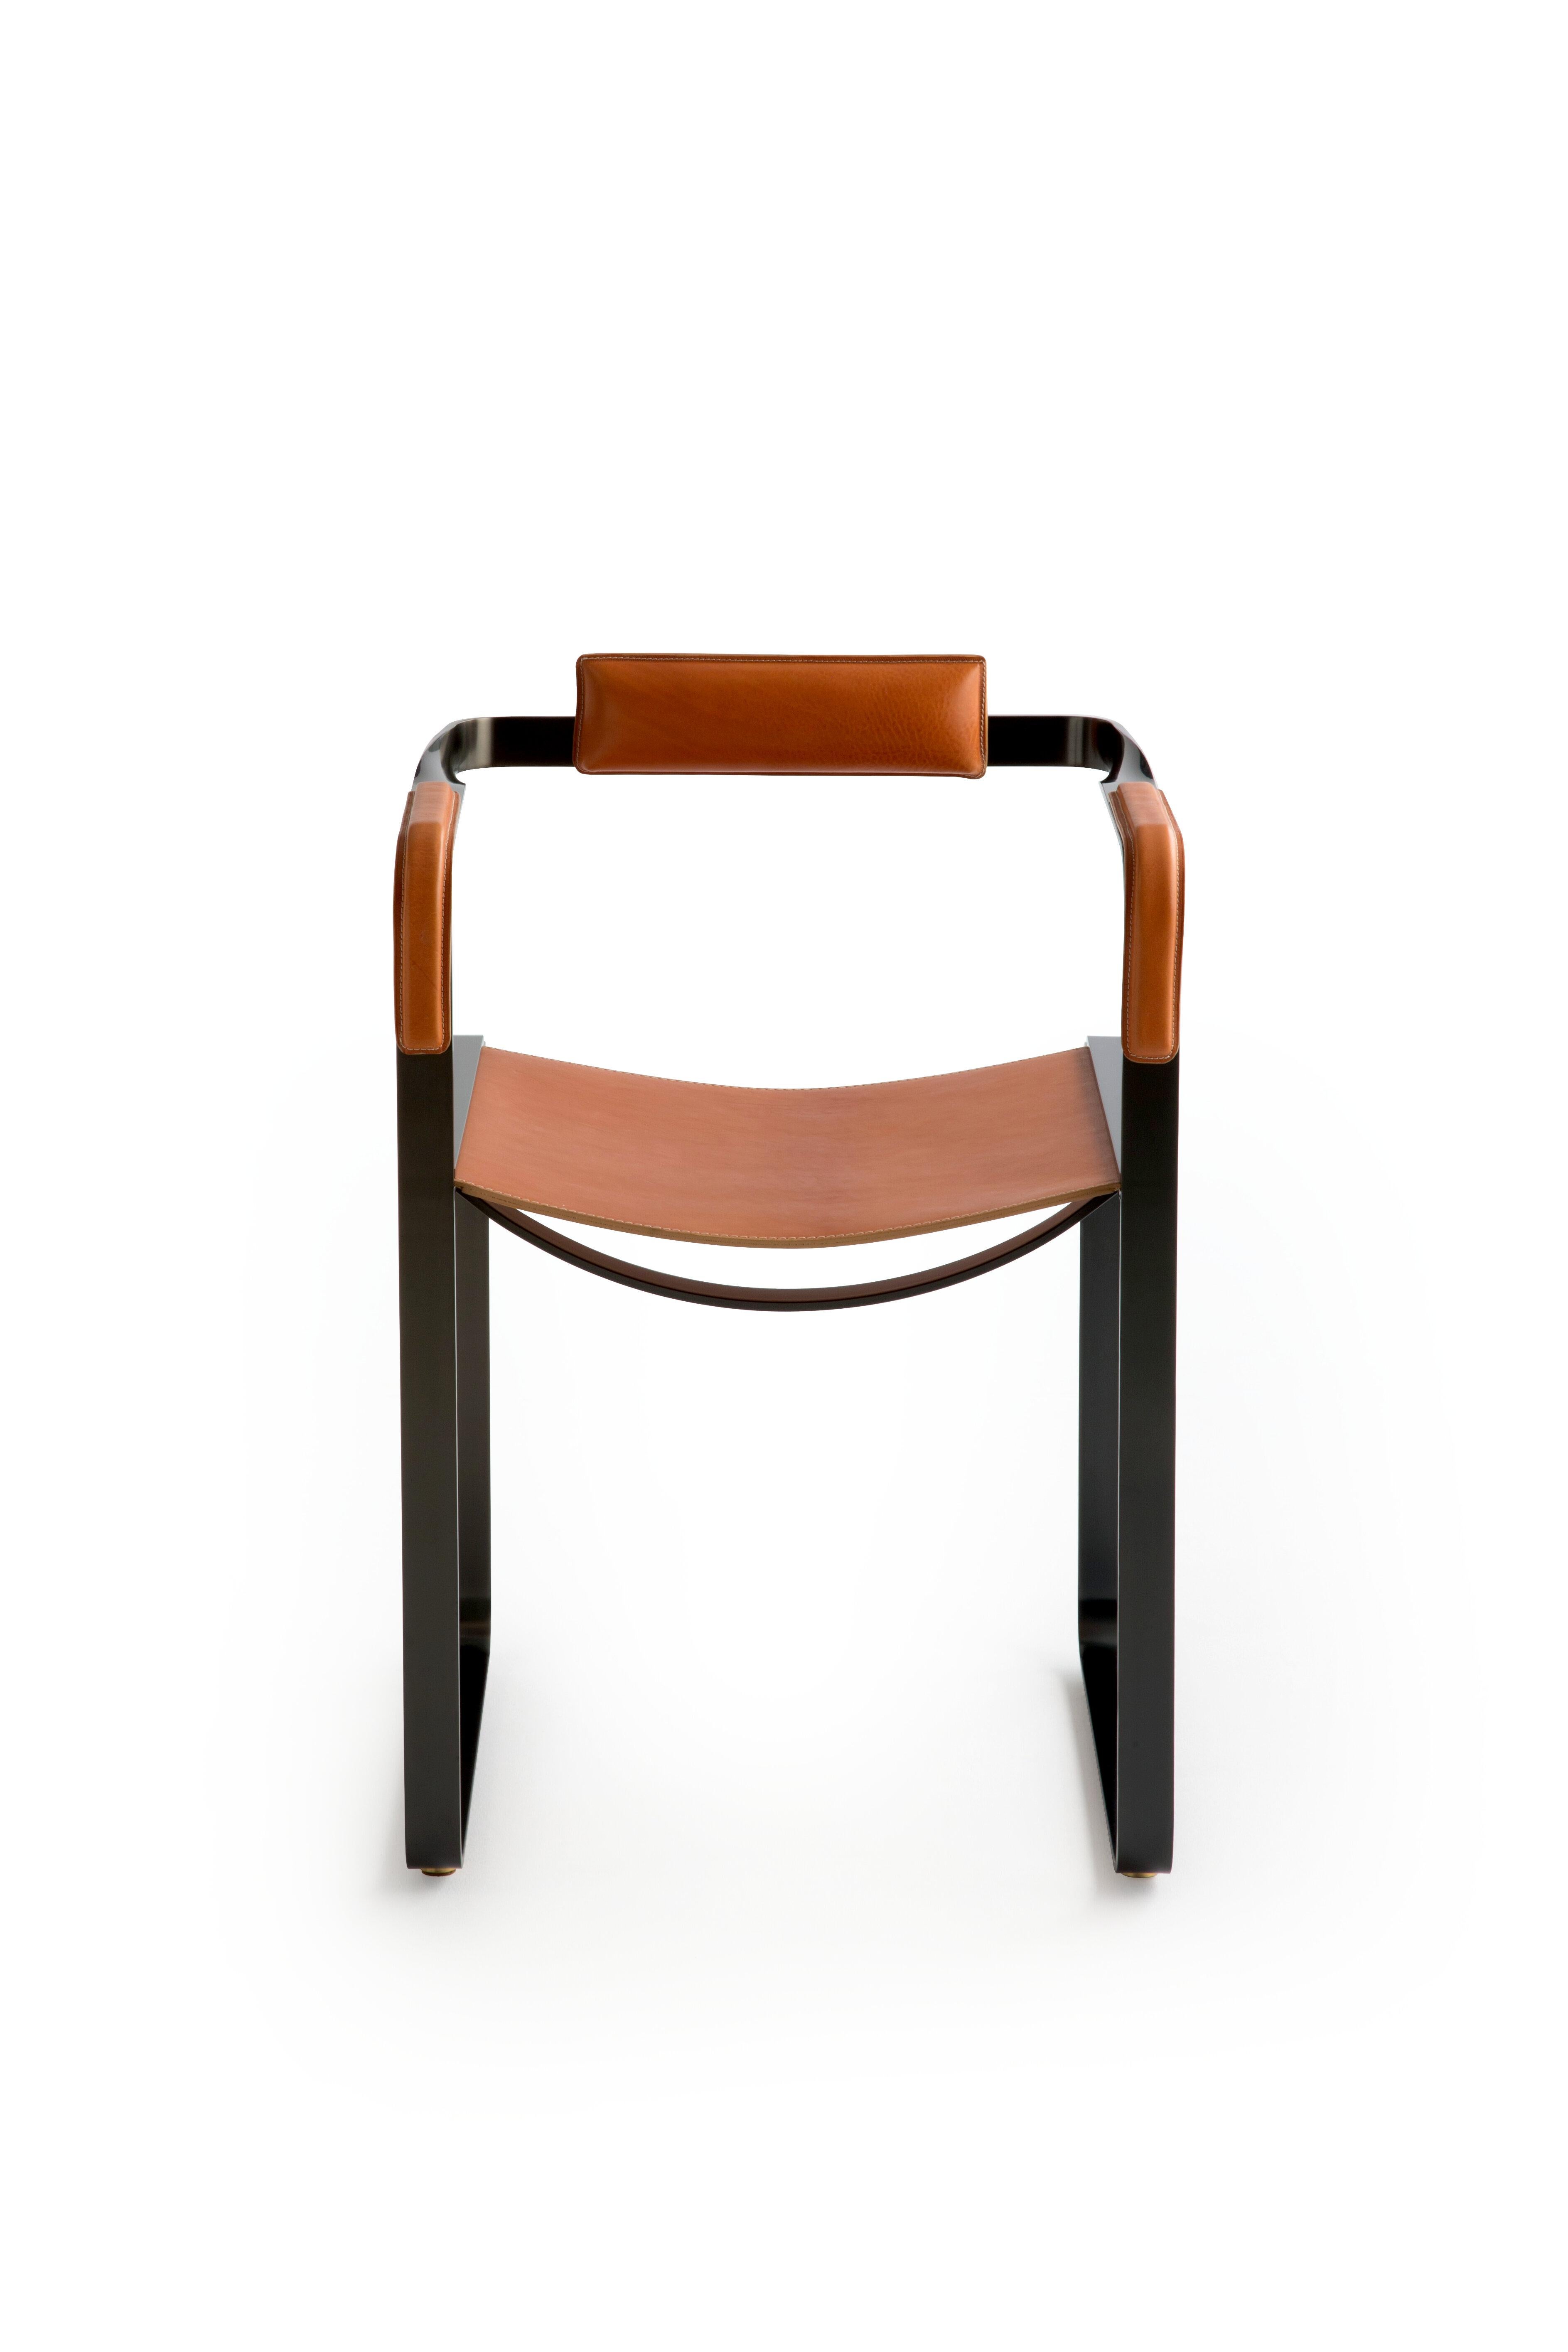 Exemple de salle d'exposition

Le fauteuil contemporain Wanderlust appartient à une collection de pièces minimalistes et sereines où l'exclusivité et la précision se manifestent dans de petits détails tels que les écrous et les boulons en métal